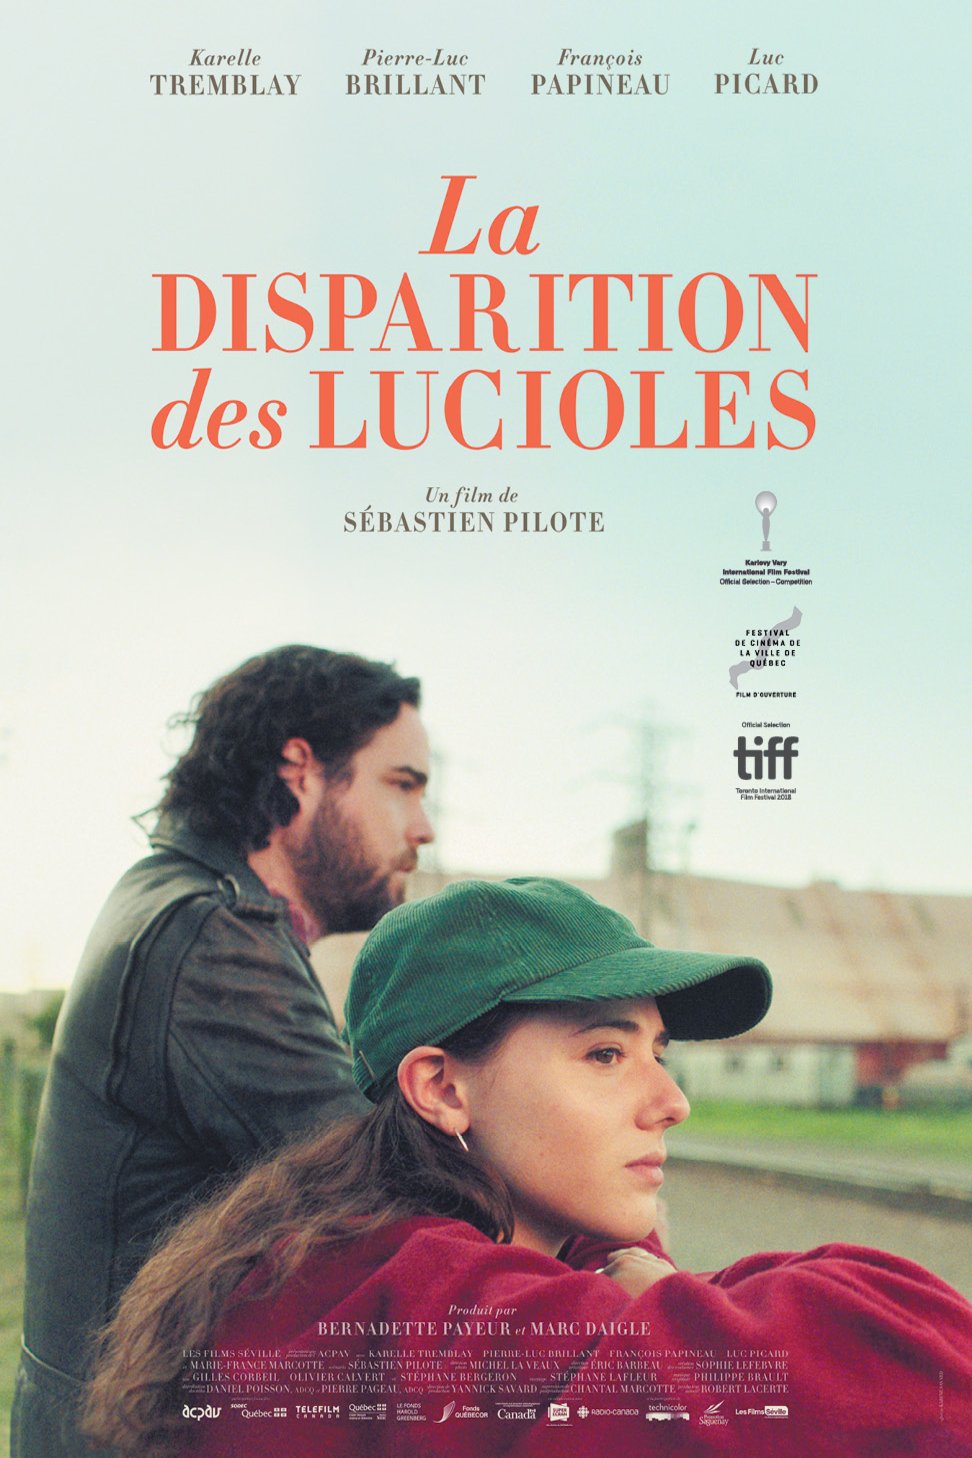 Poster of the movie La Disparition des lucioles